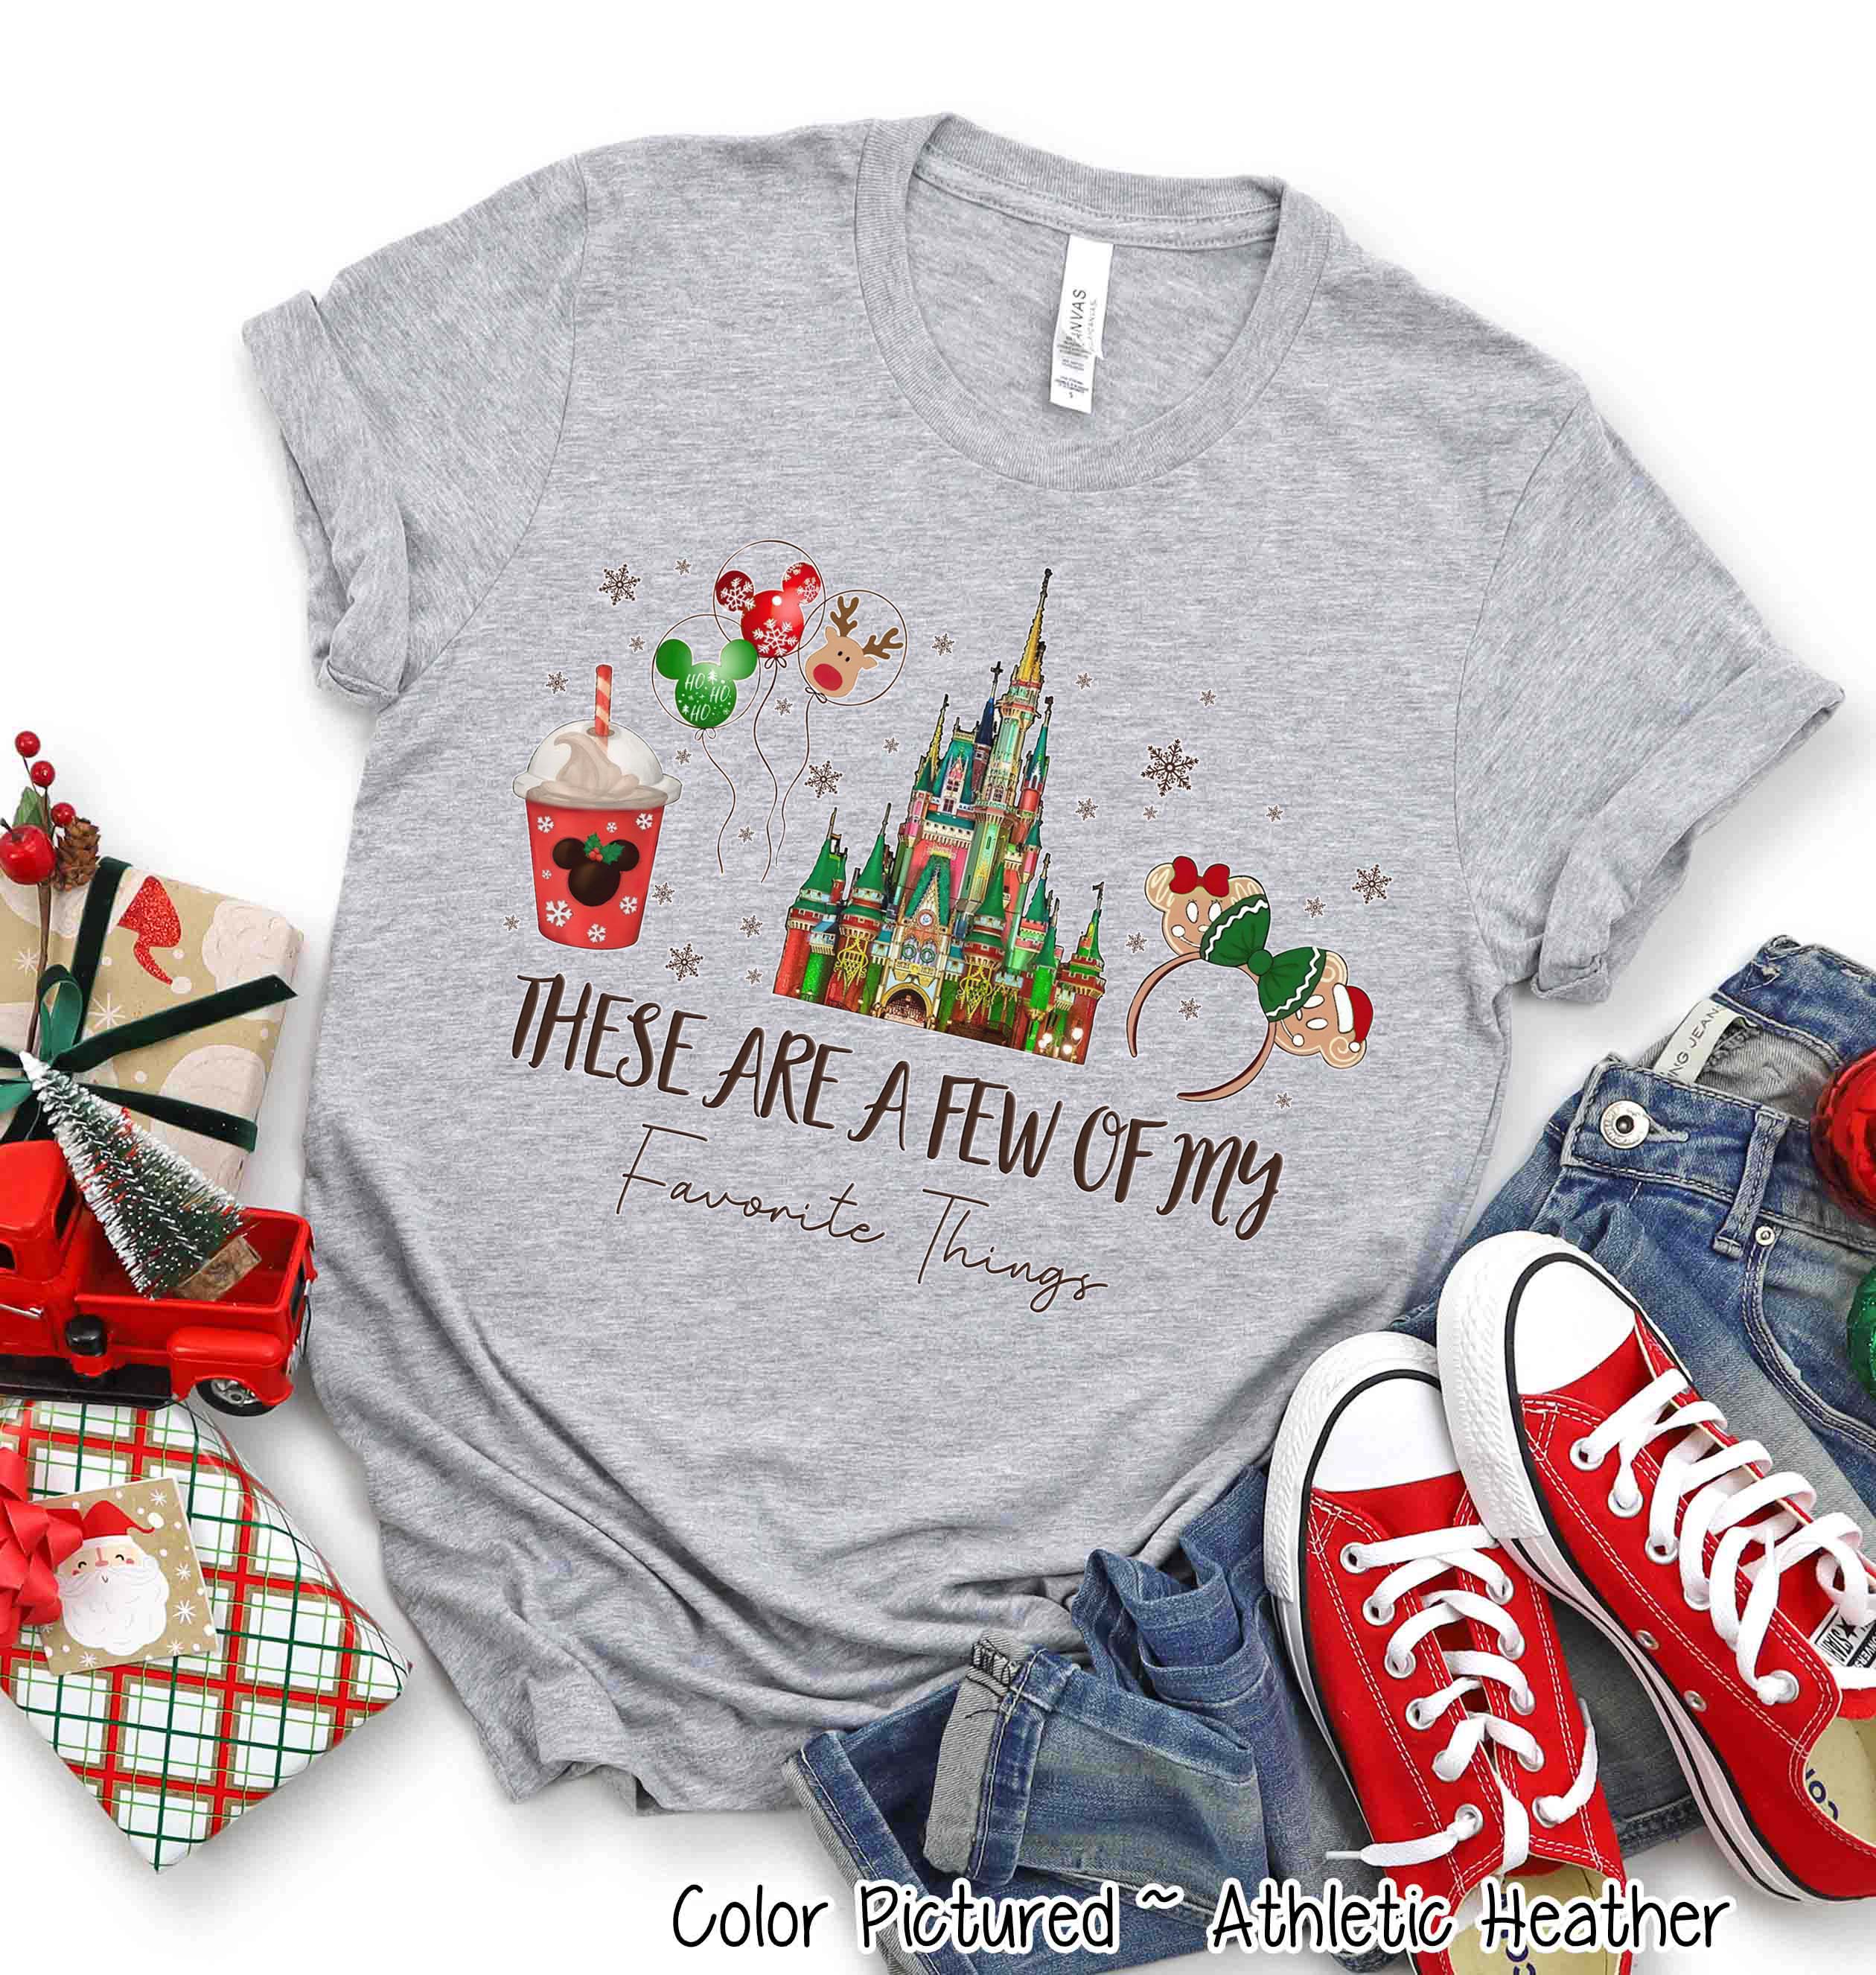 Favorite Disney Christmas Things Tee or Sweatshirt